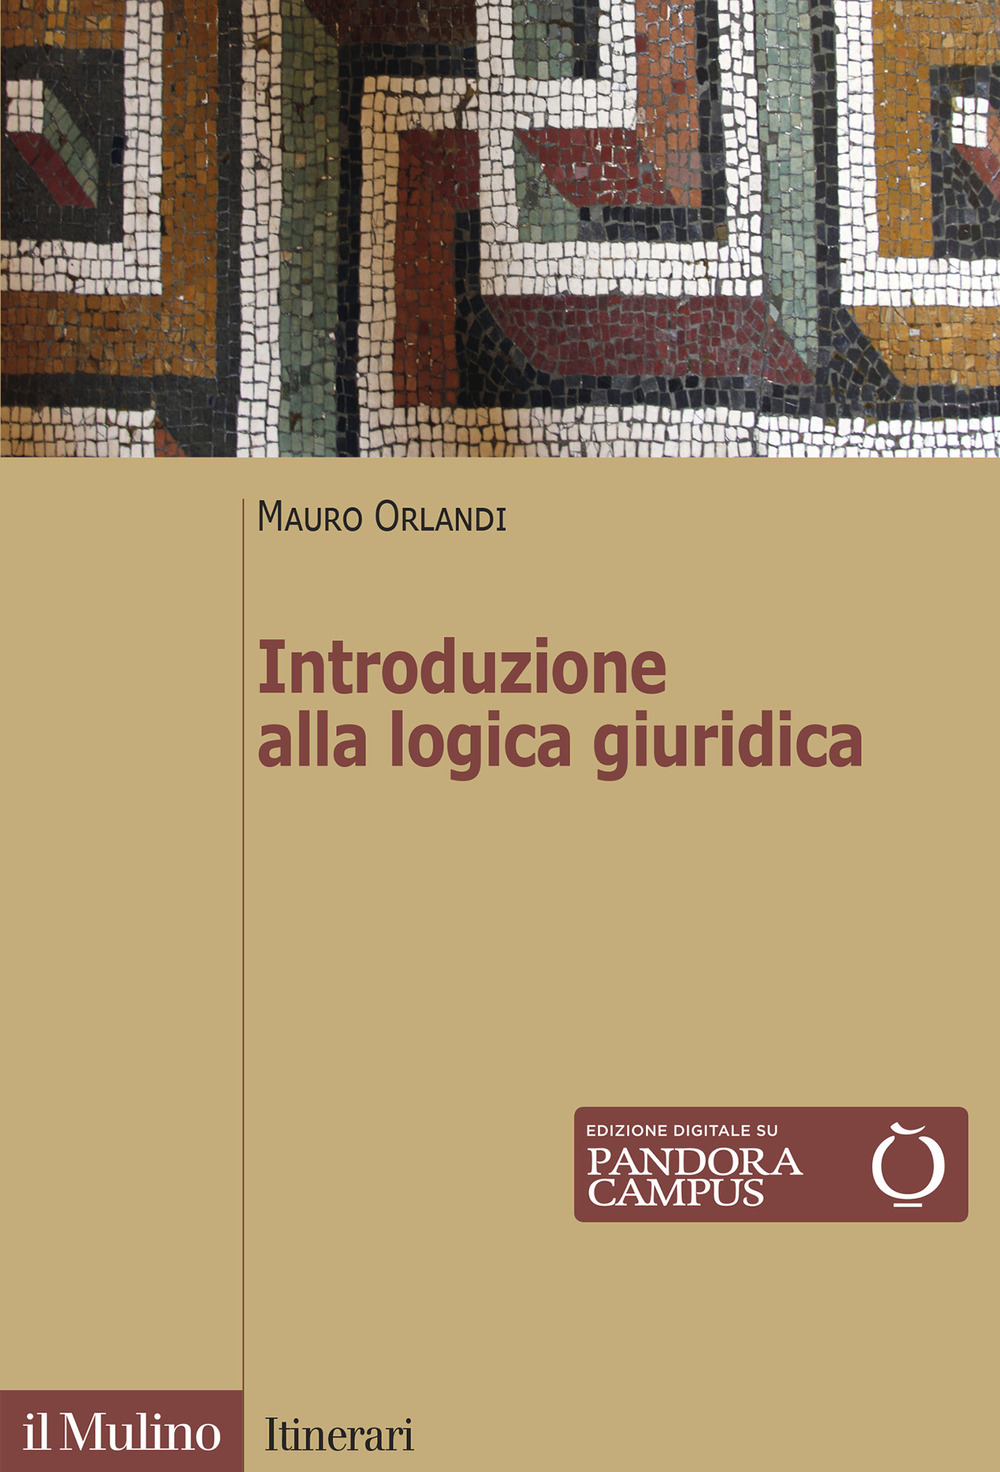 Libri Mauro Orlandi - Introduzione Alla Logica Giuridica NUOVO SIGILLATO, EDIZIONE DEL 29/04/2021 SUBITO DISPONIBILE